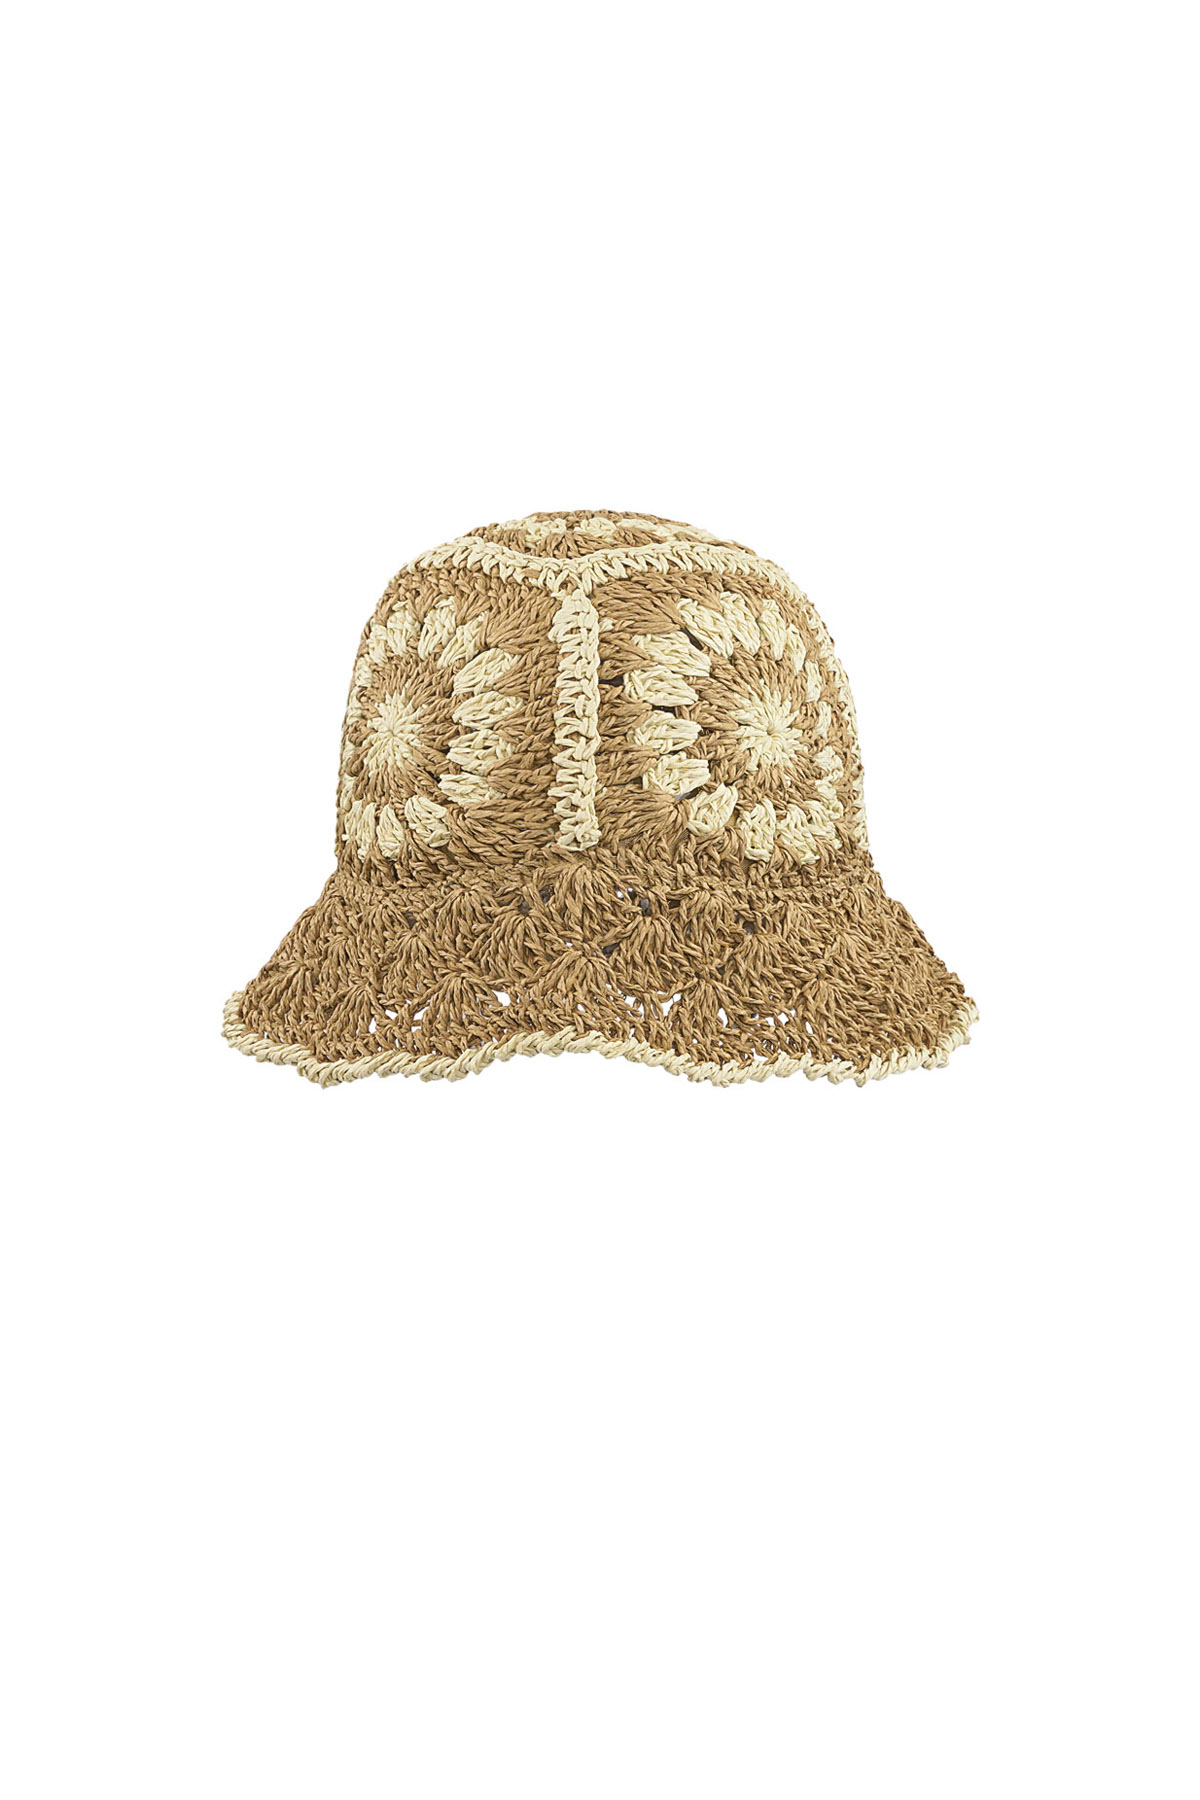 Crochet hoedje met bloemen - camel h5 